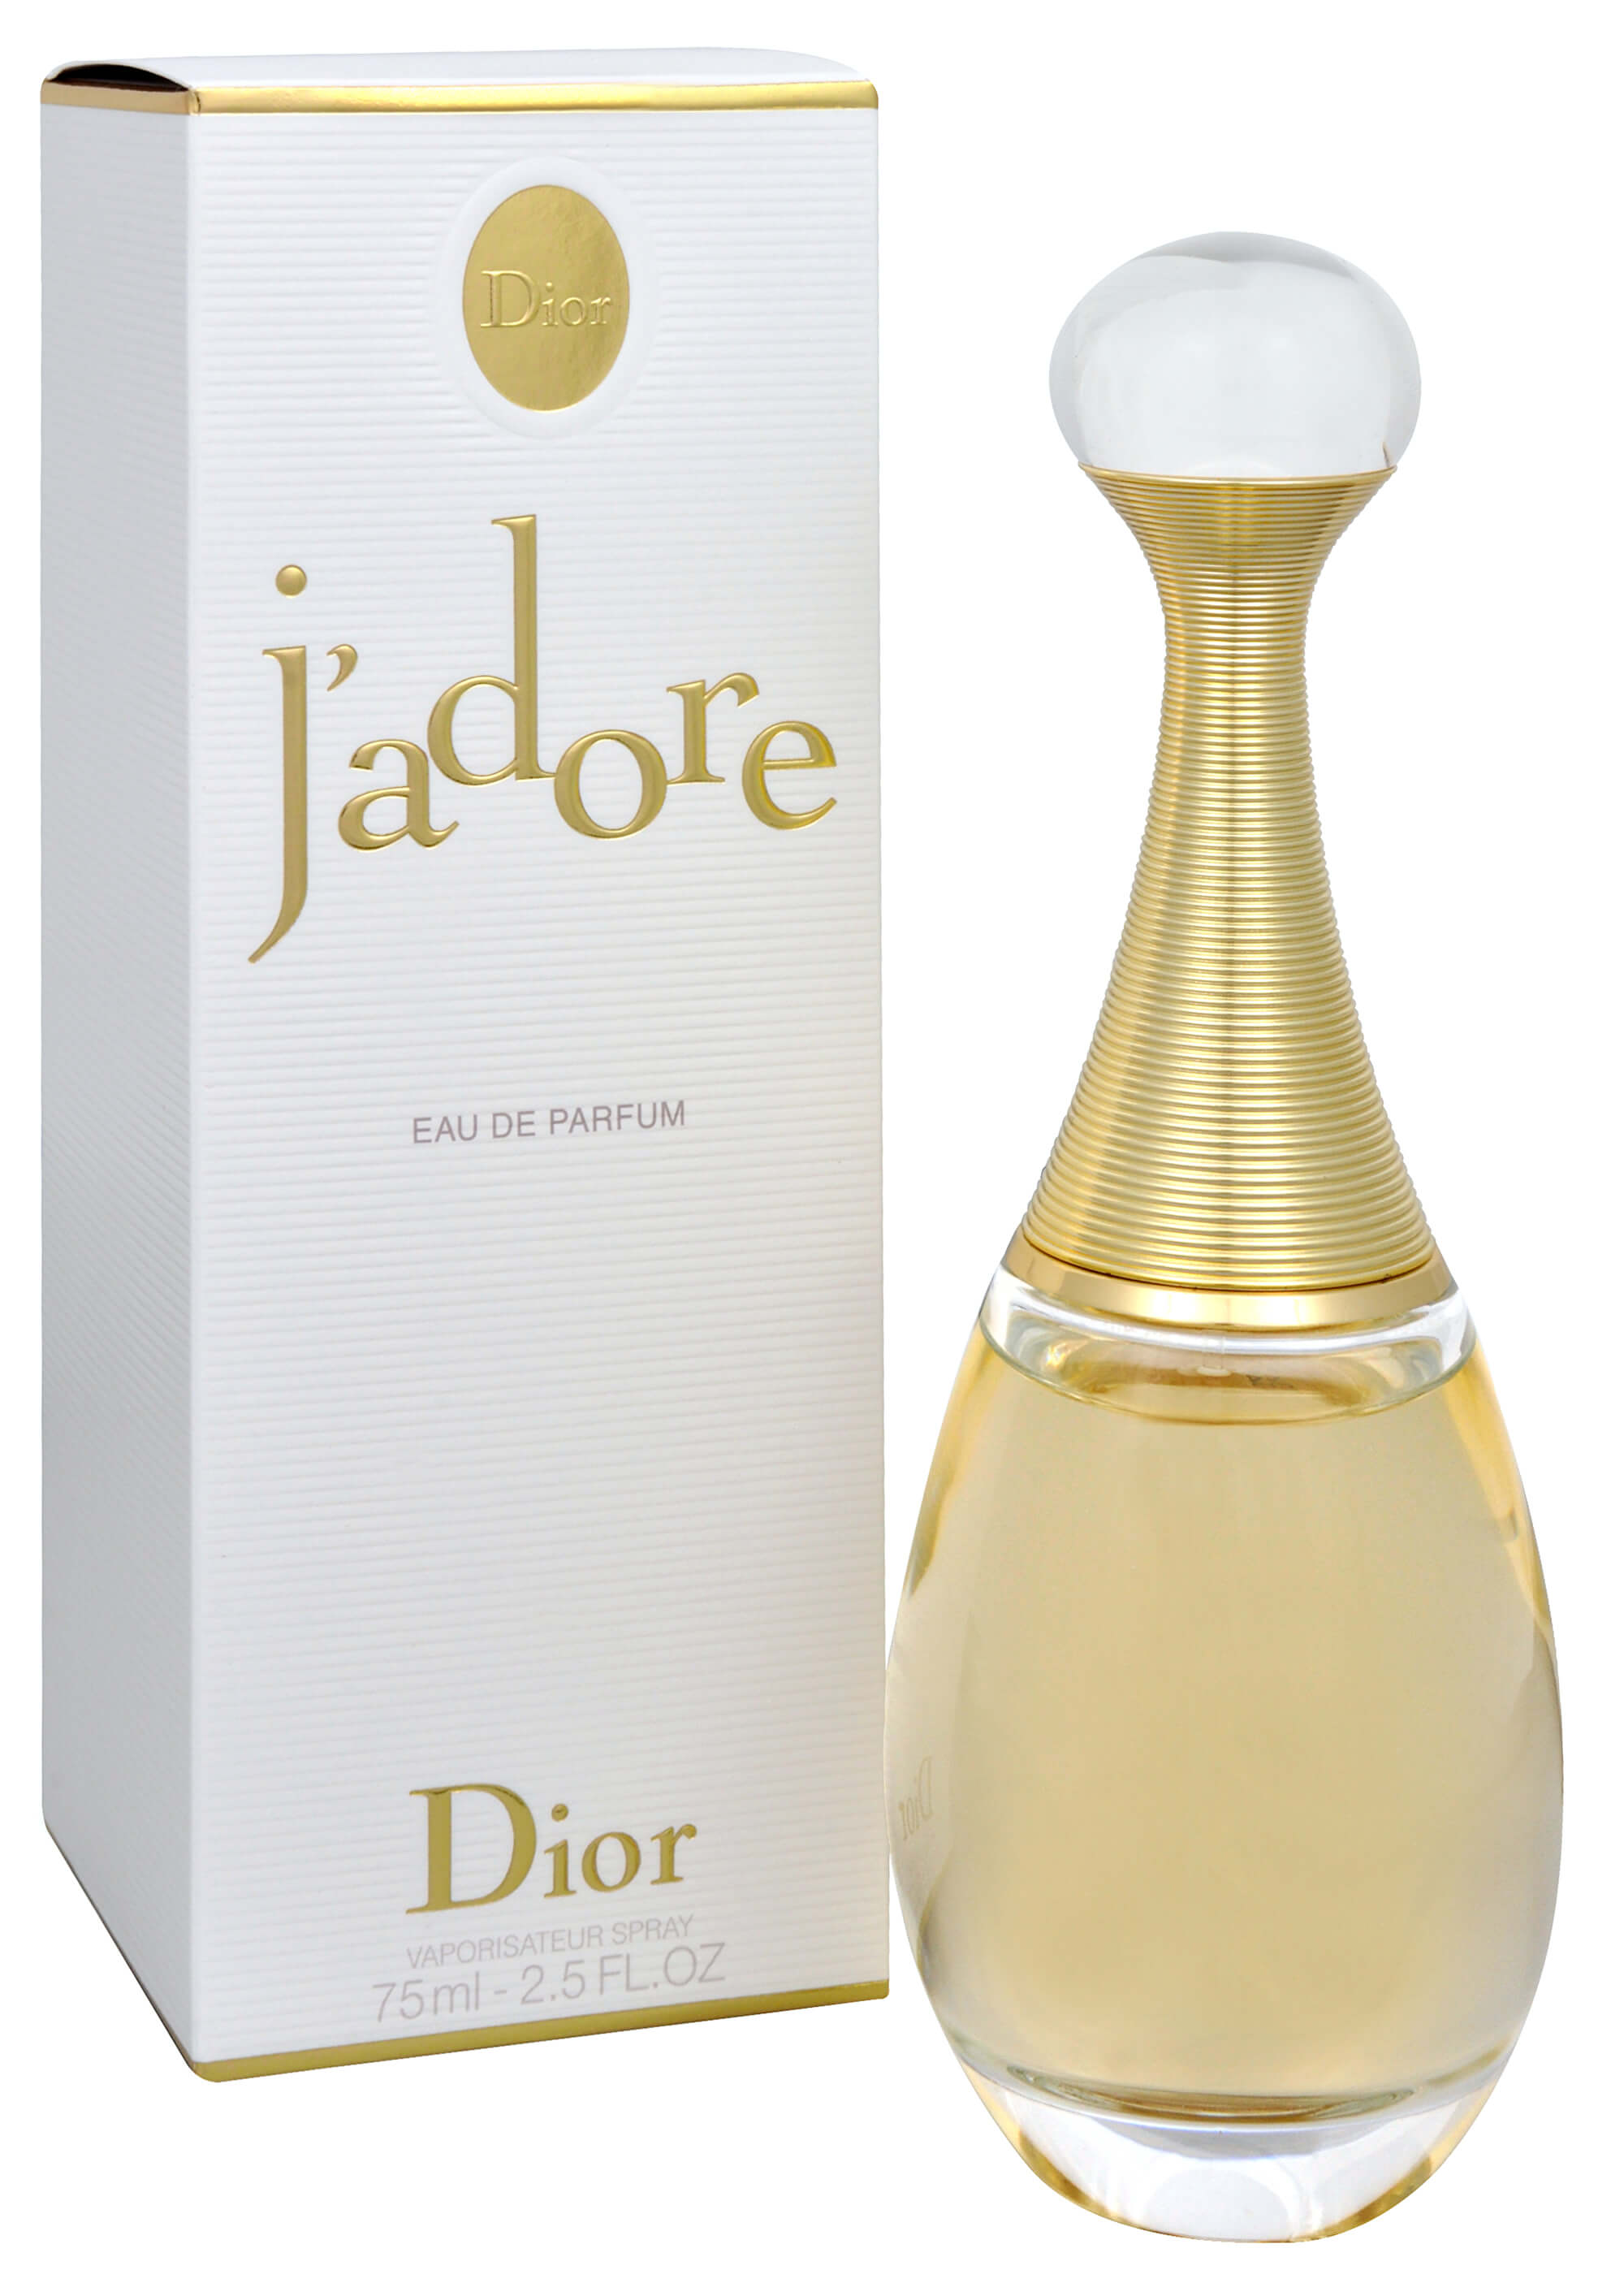 Духи жадор оригинал. Духи Christian Dior Jadore. Dior Jadore 100ml. Christian Dior j'adore EDP, 100 ml. Dior Jadore EDP 100ml.